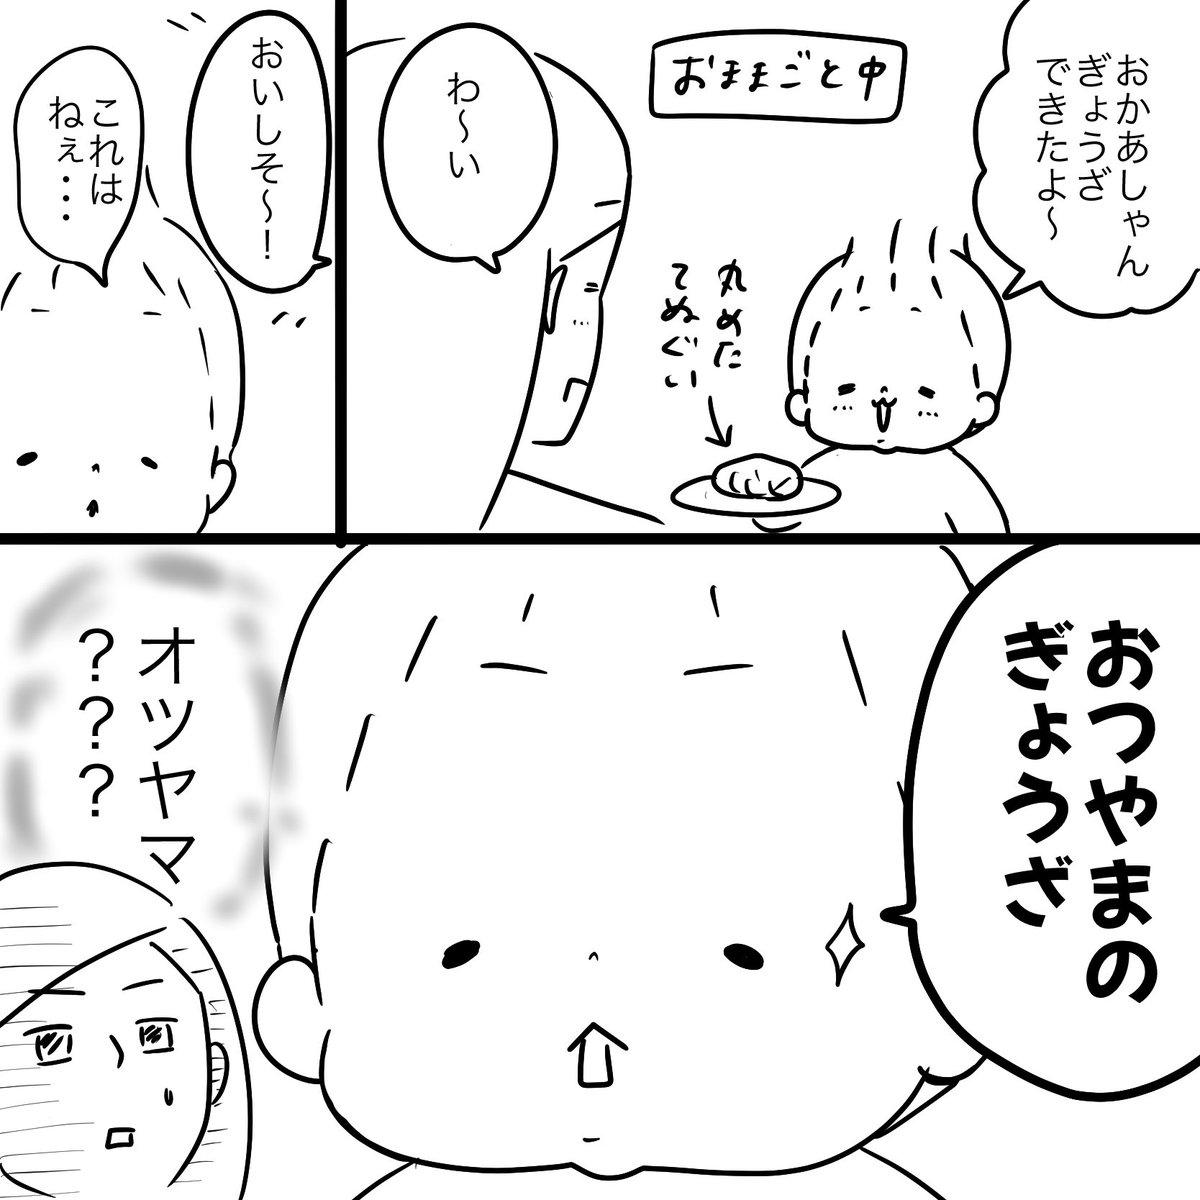 漫画はおとといの出来事。
昨日の晩ご飯は餃子でした。

#大阪王将冷凍餃子 